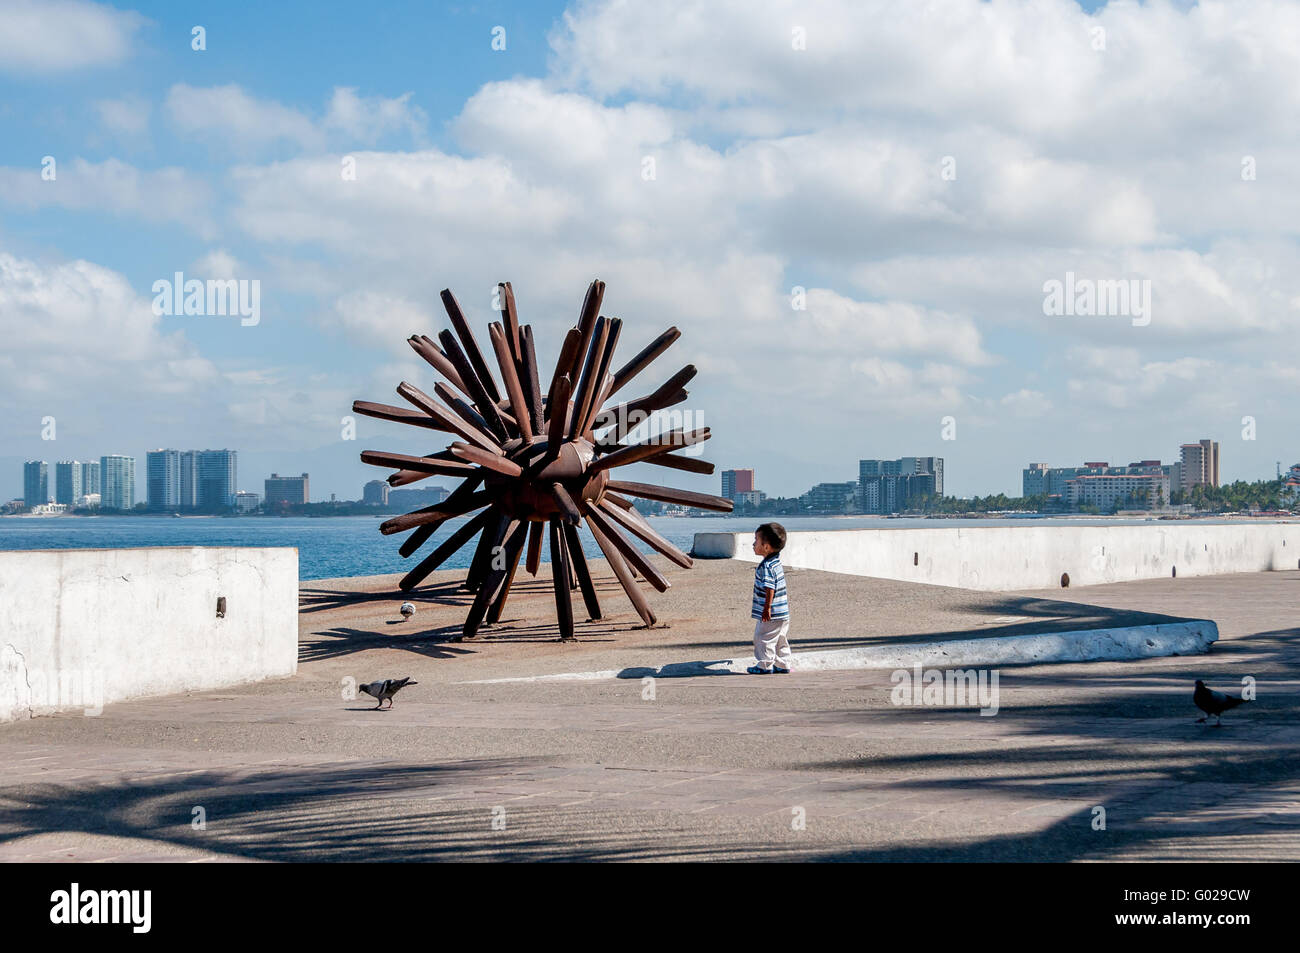 Ein kleines Kind betrachtet auf dem Malecon in Puerto Vallarta Eriza-Dos, die Eisen Seeigel moderne Skulptur des Künstlers Blu. Stockfoto